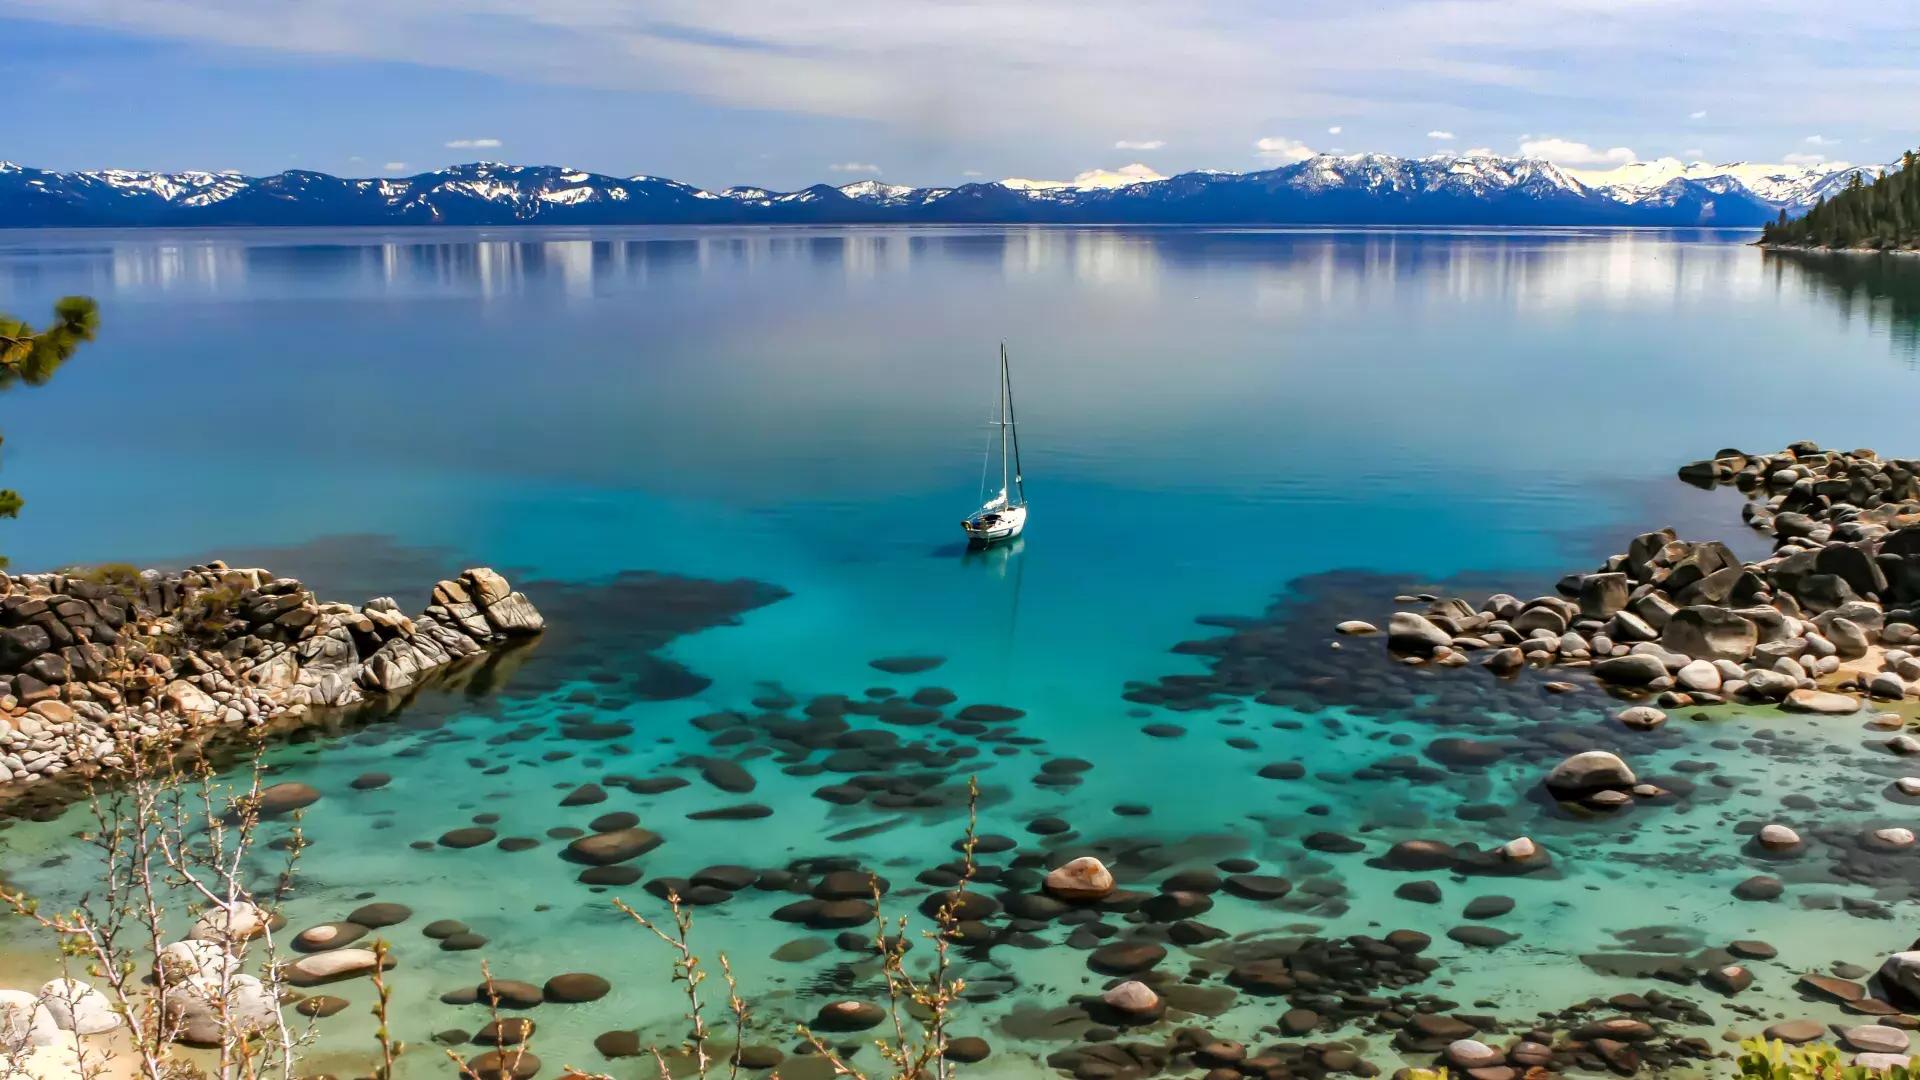 레이크 타호(Lake Tahoe)의 수정처럼 맑고 푸른 물